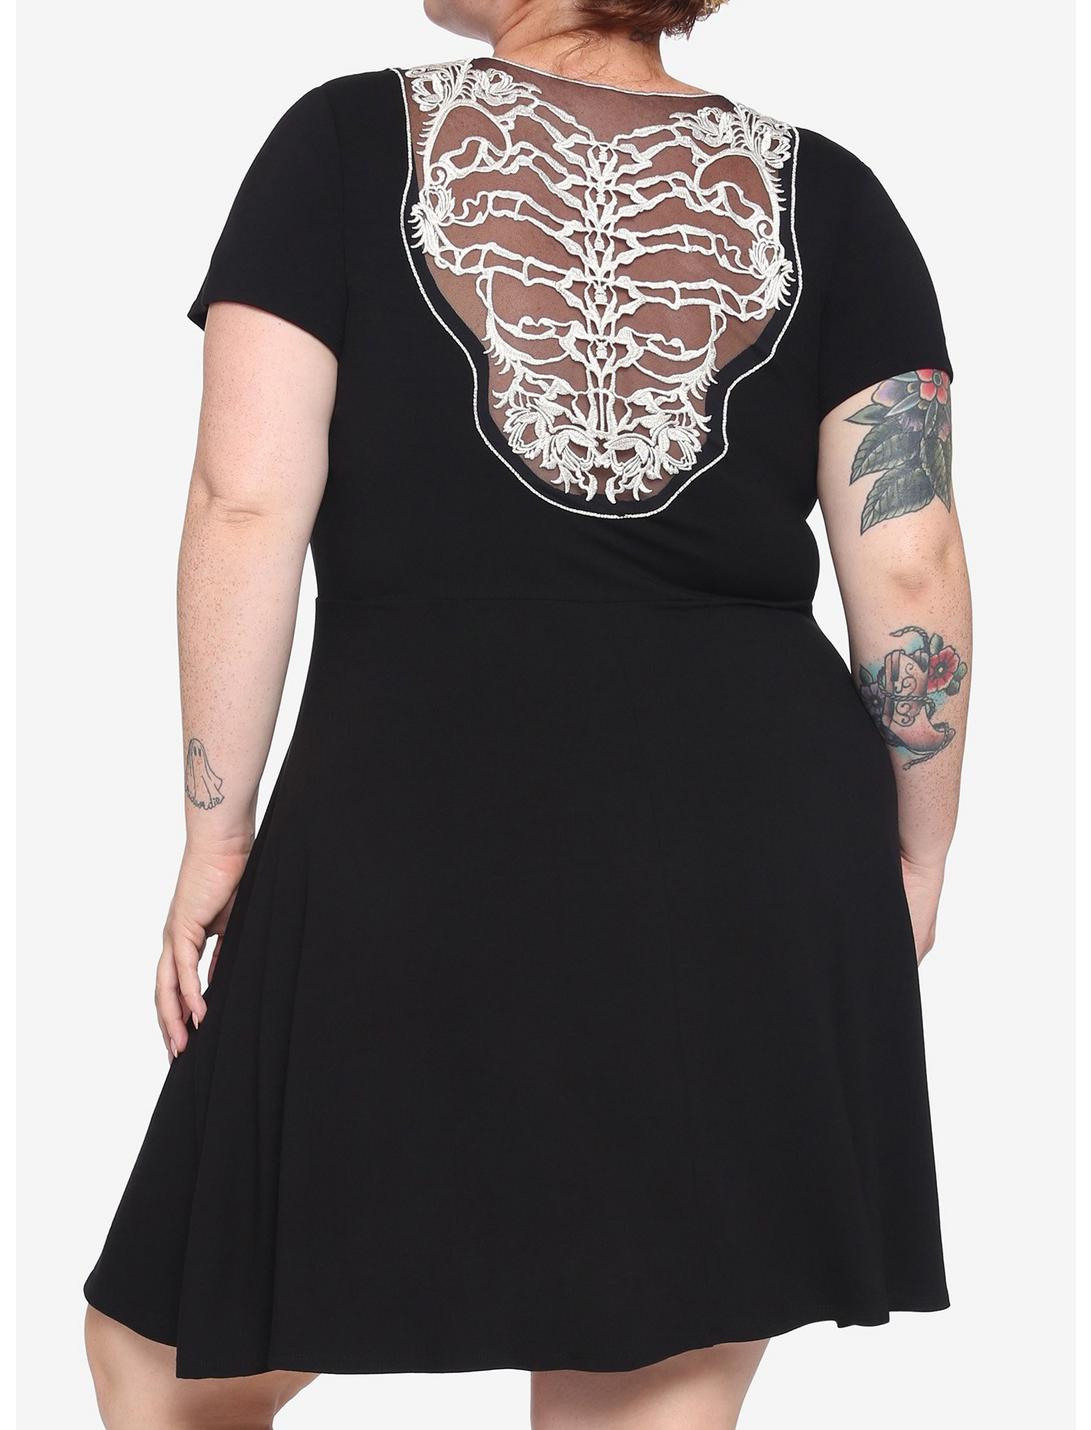 Black Lace Back Skull Cutout Dress Plus Size, MULTI, hi-res